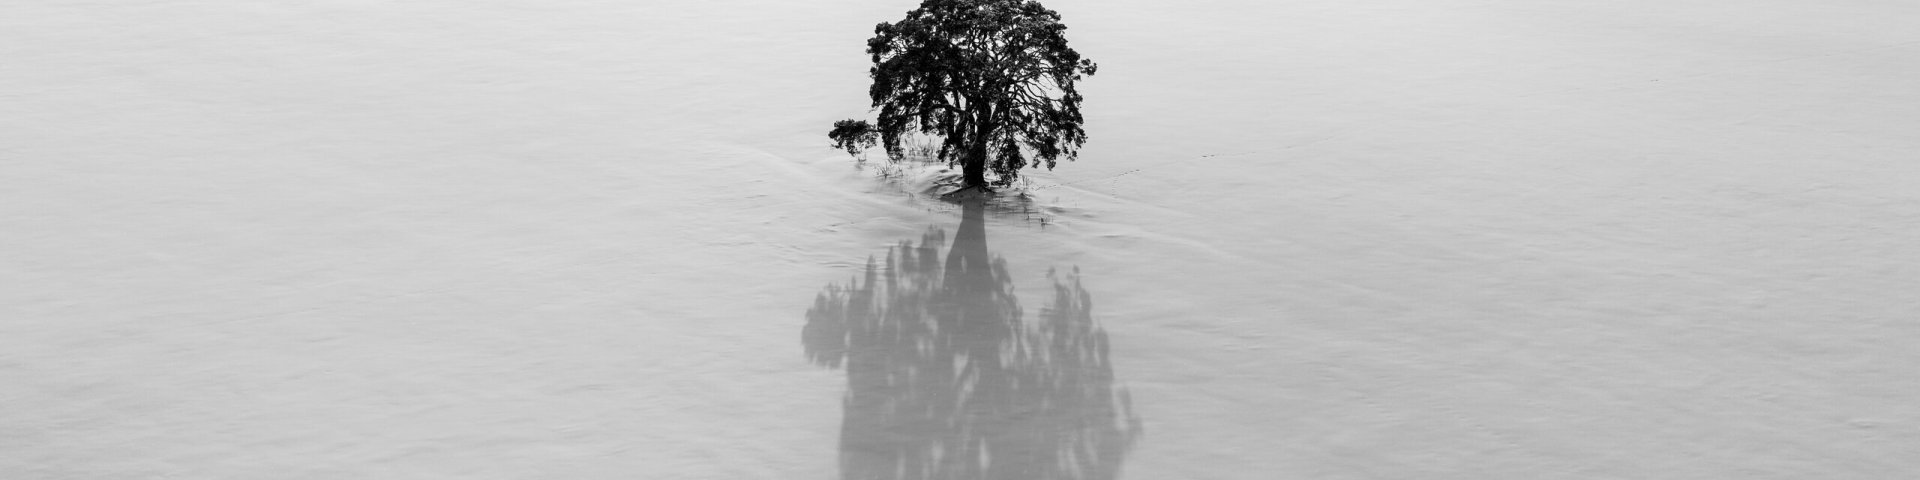 Kunstiline foto üksikust puust ja selle suurest varjust_autor Tuule Müürsepp